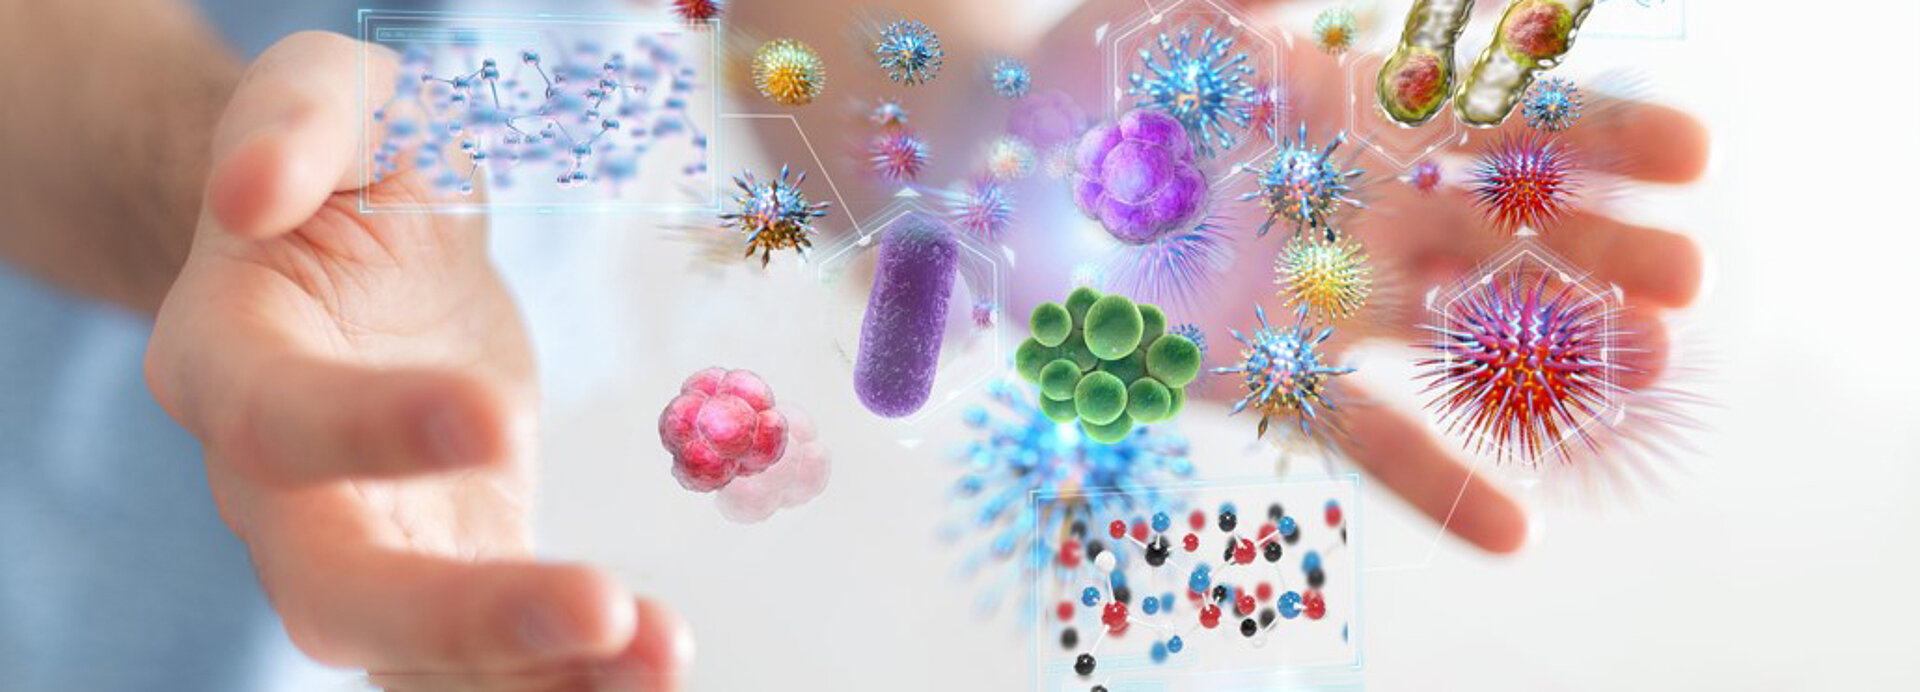 Schematische Darstellung von Händen, die Viren und Bakterien umschließen. 